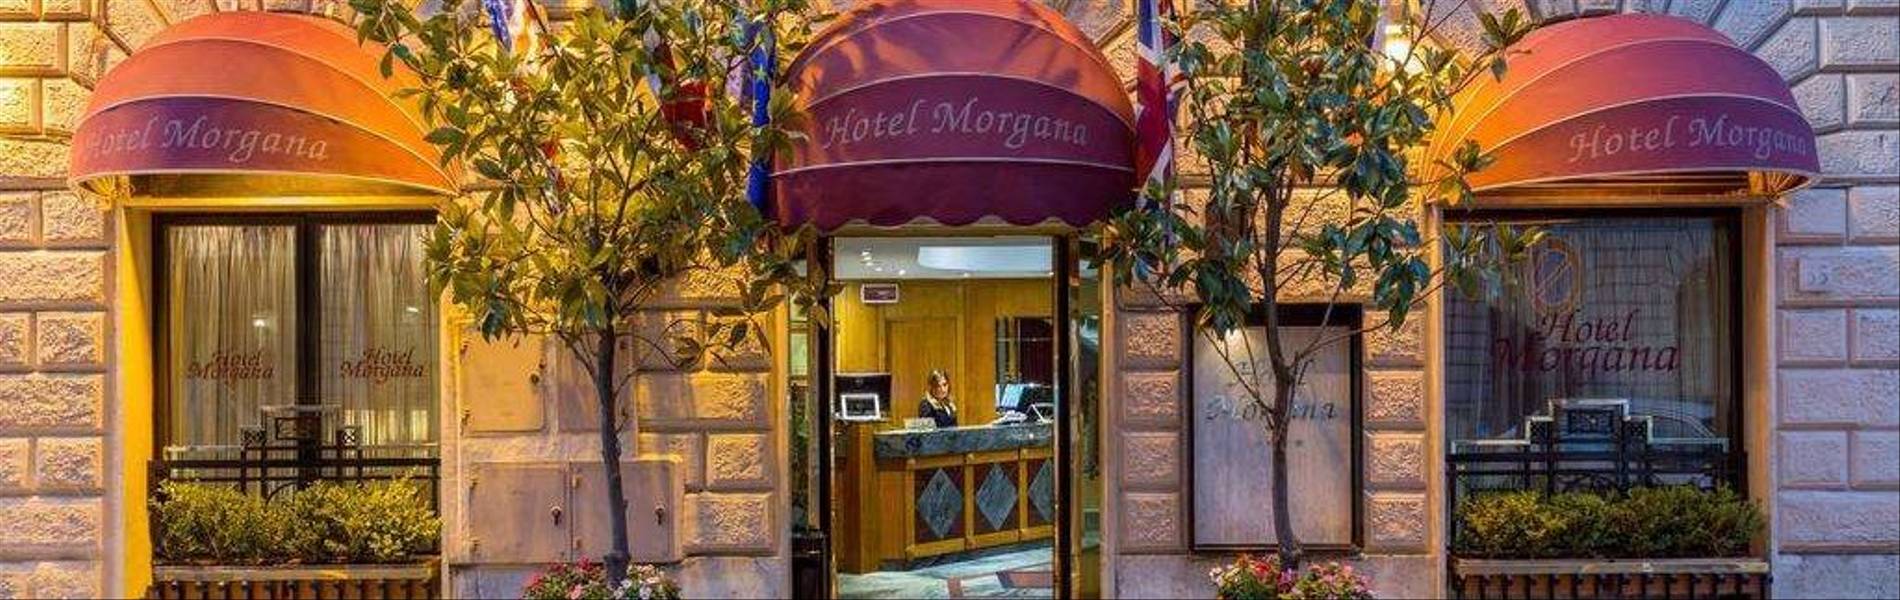 Hotel Morgana 2.jpg